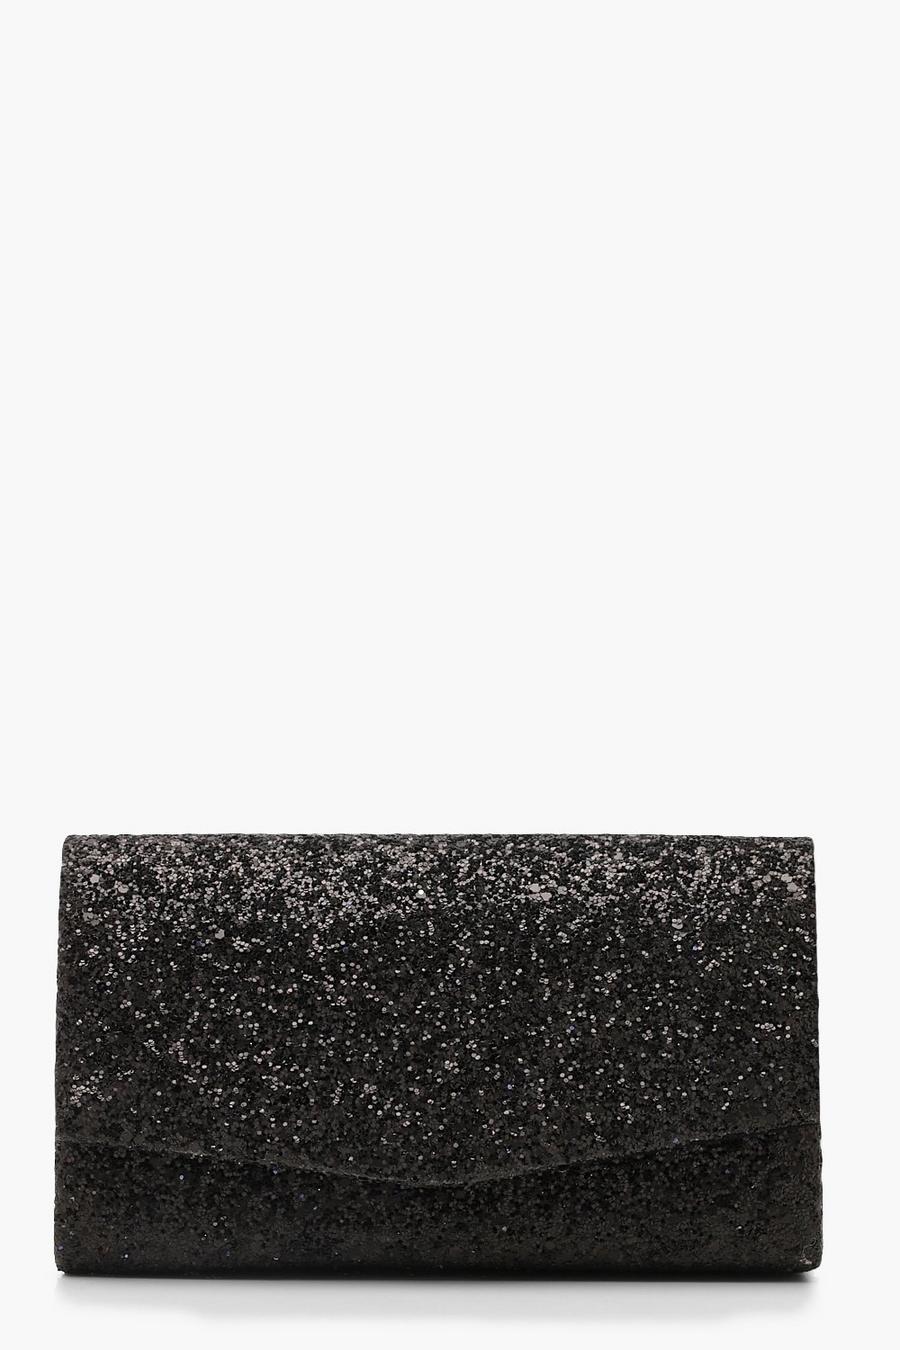 Black Chunky Glitter stored Clutch Bag